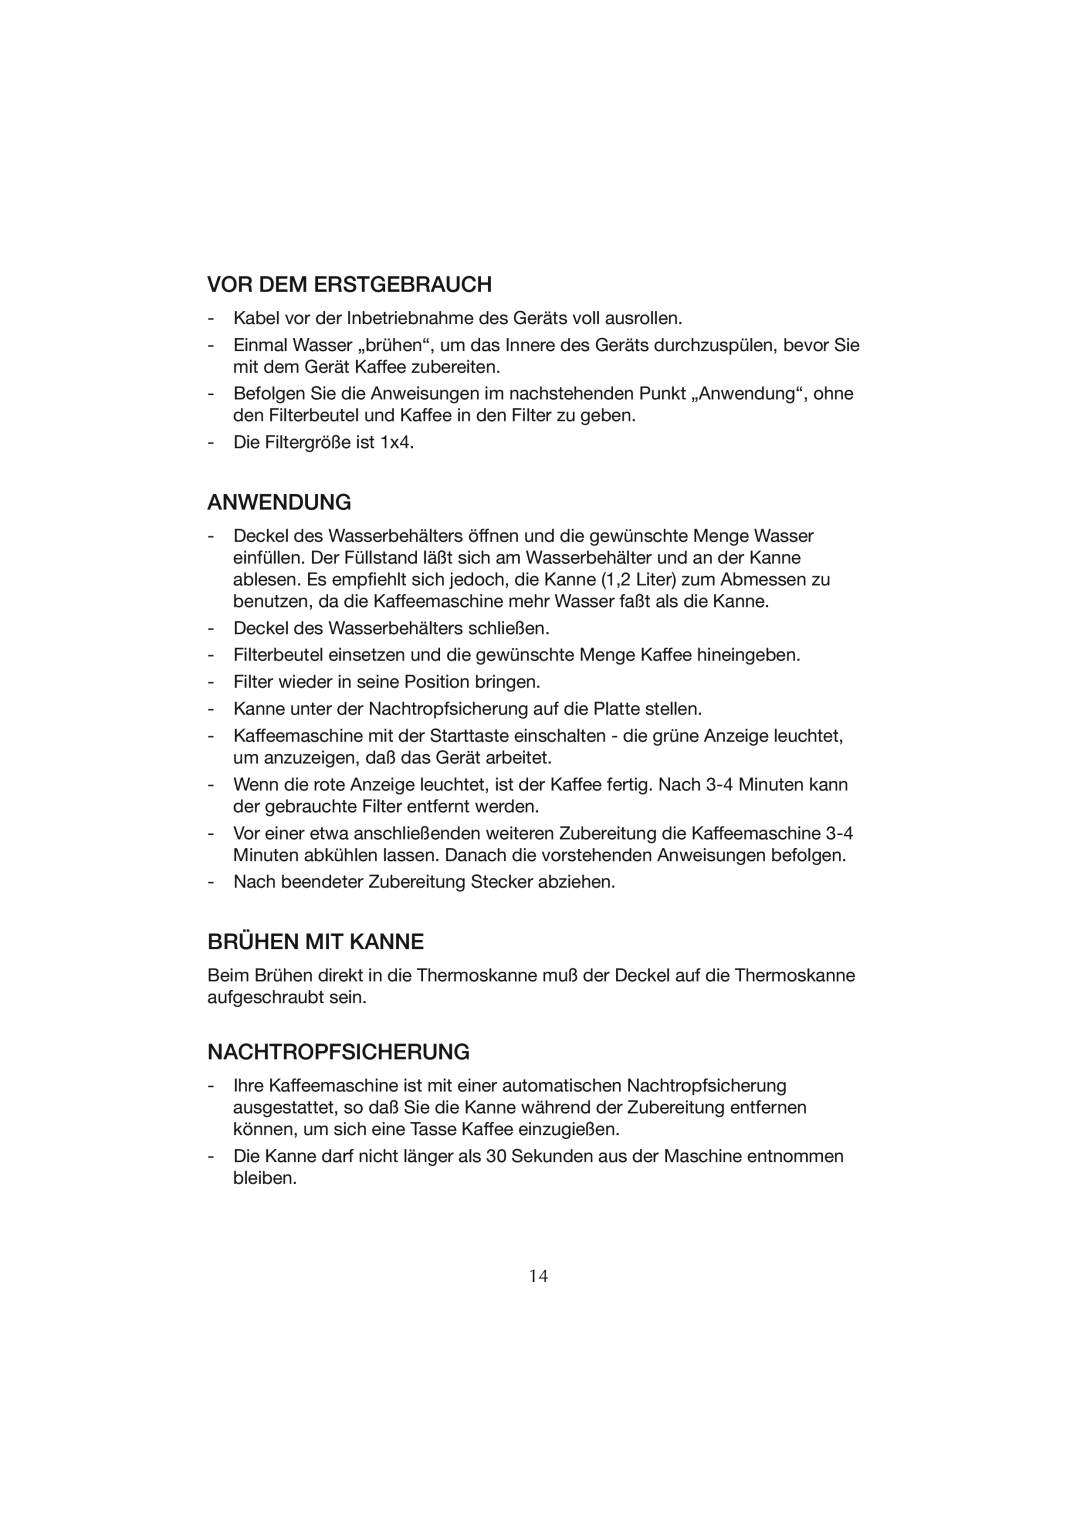 Melissa CM0801 manual Vor Dem Erstgebrauch, Anwendung, Brühen Mit Kanne, Nachtropfsicherung 